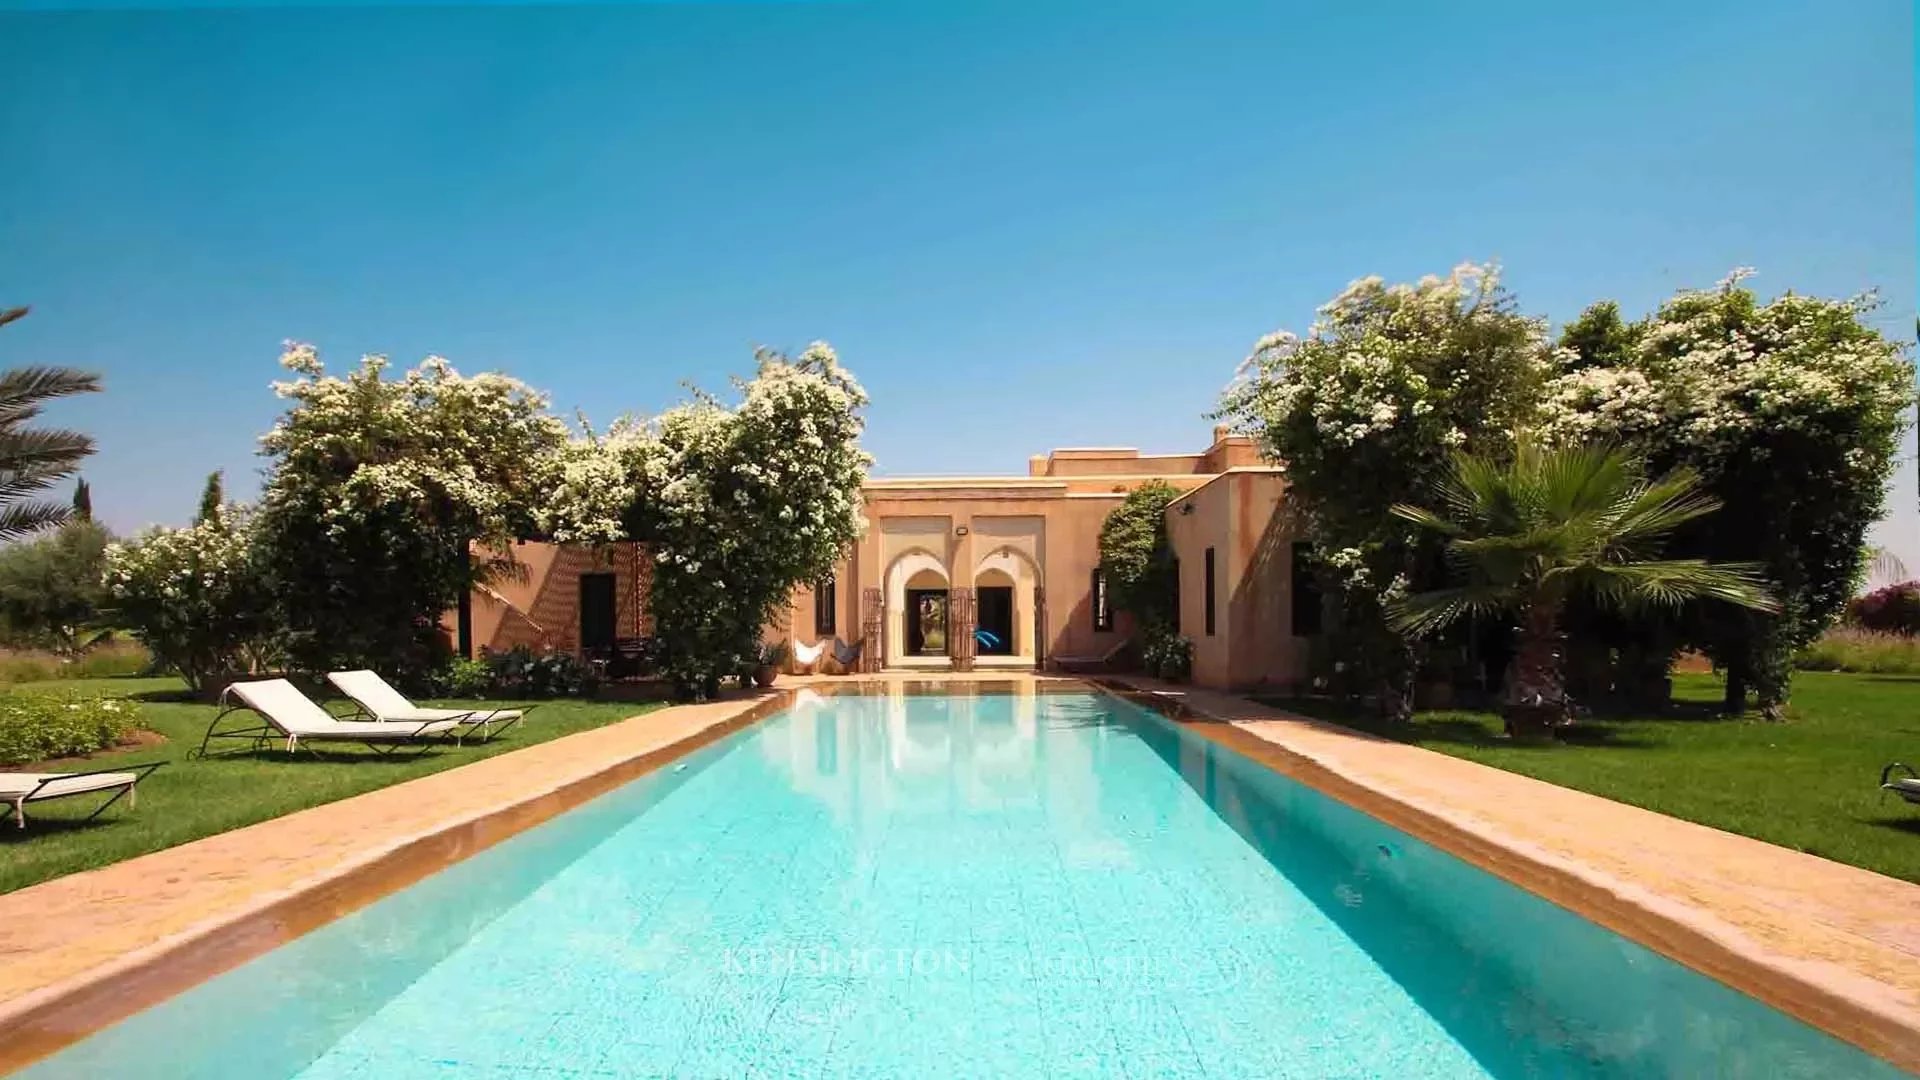 Villa Cetus in Marrakech, Morocco